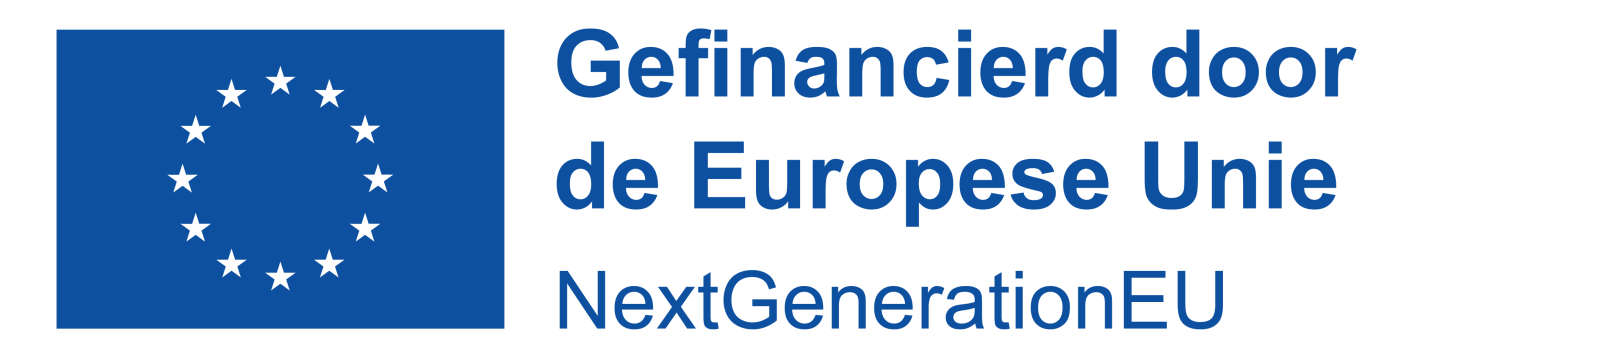 Logo Gefinancierd door de Europese Unie